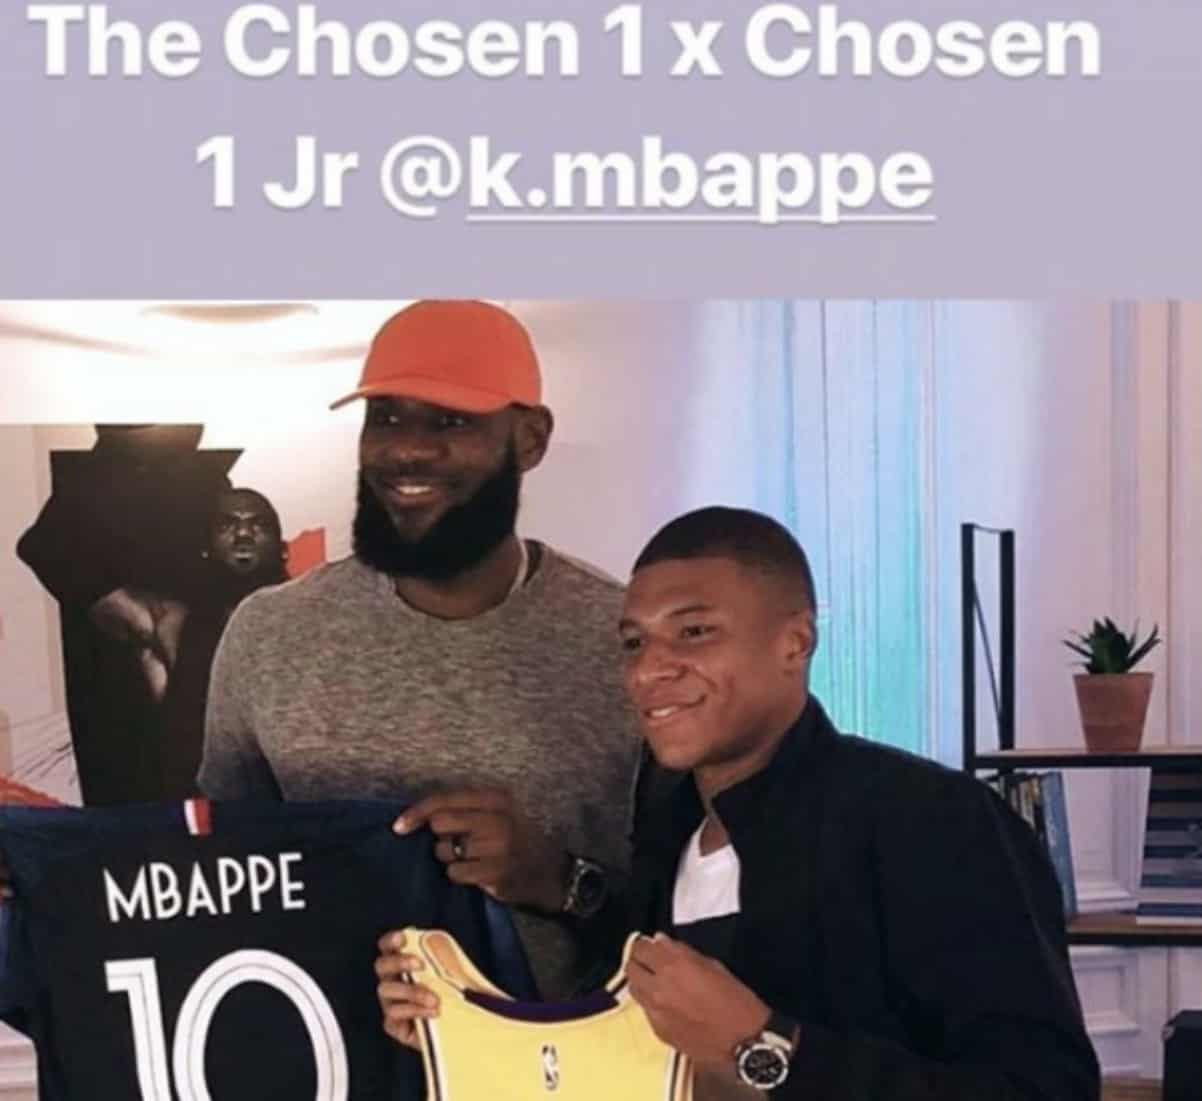 Pour LeBron, Mbappé est le « Chosen One Jr »